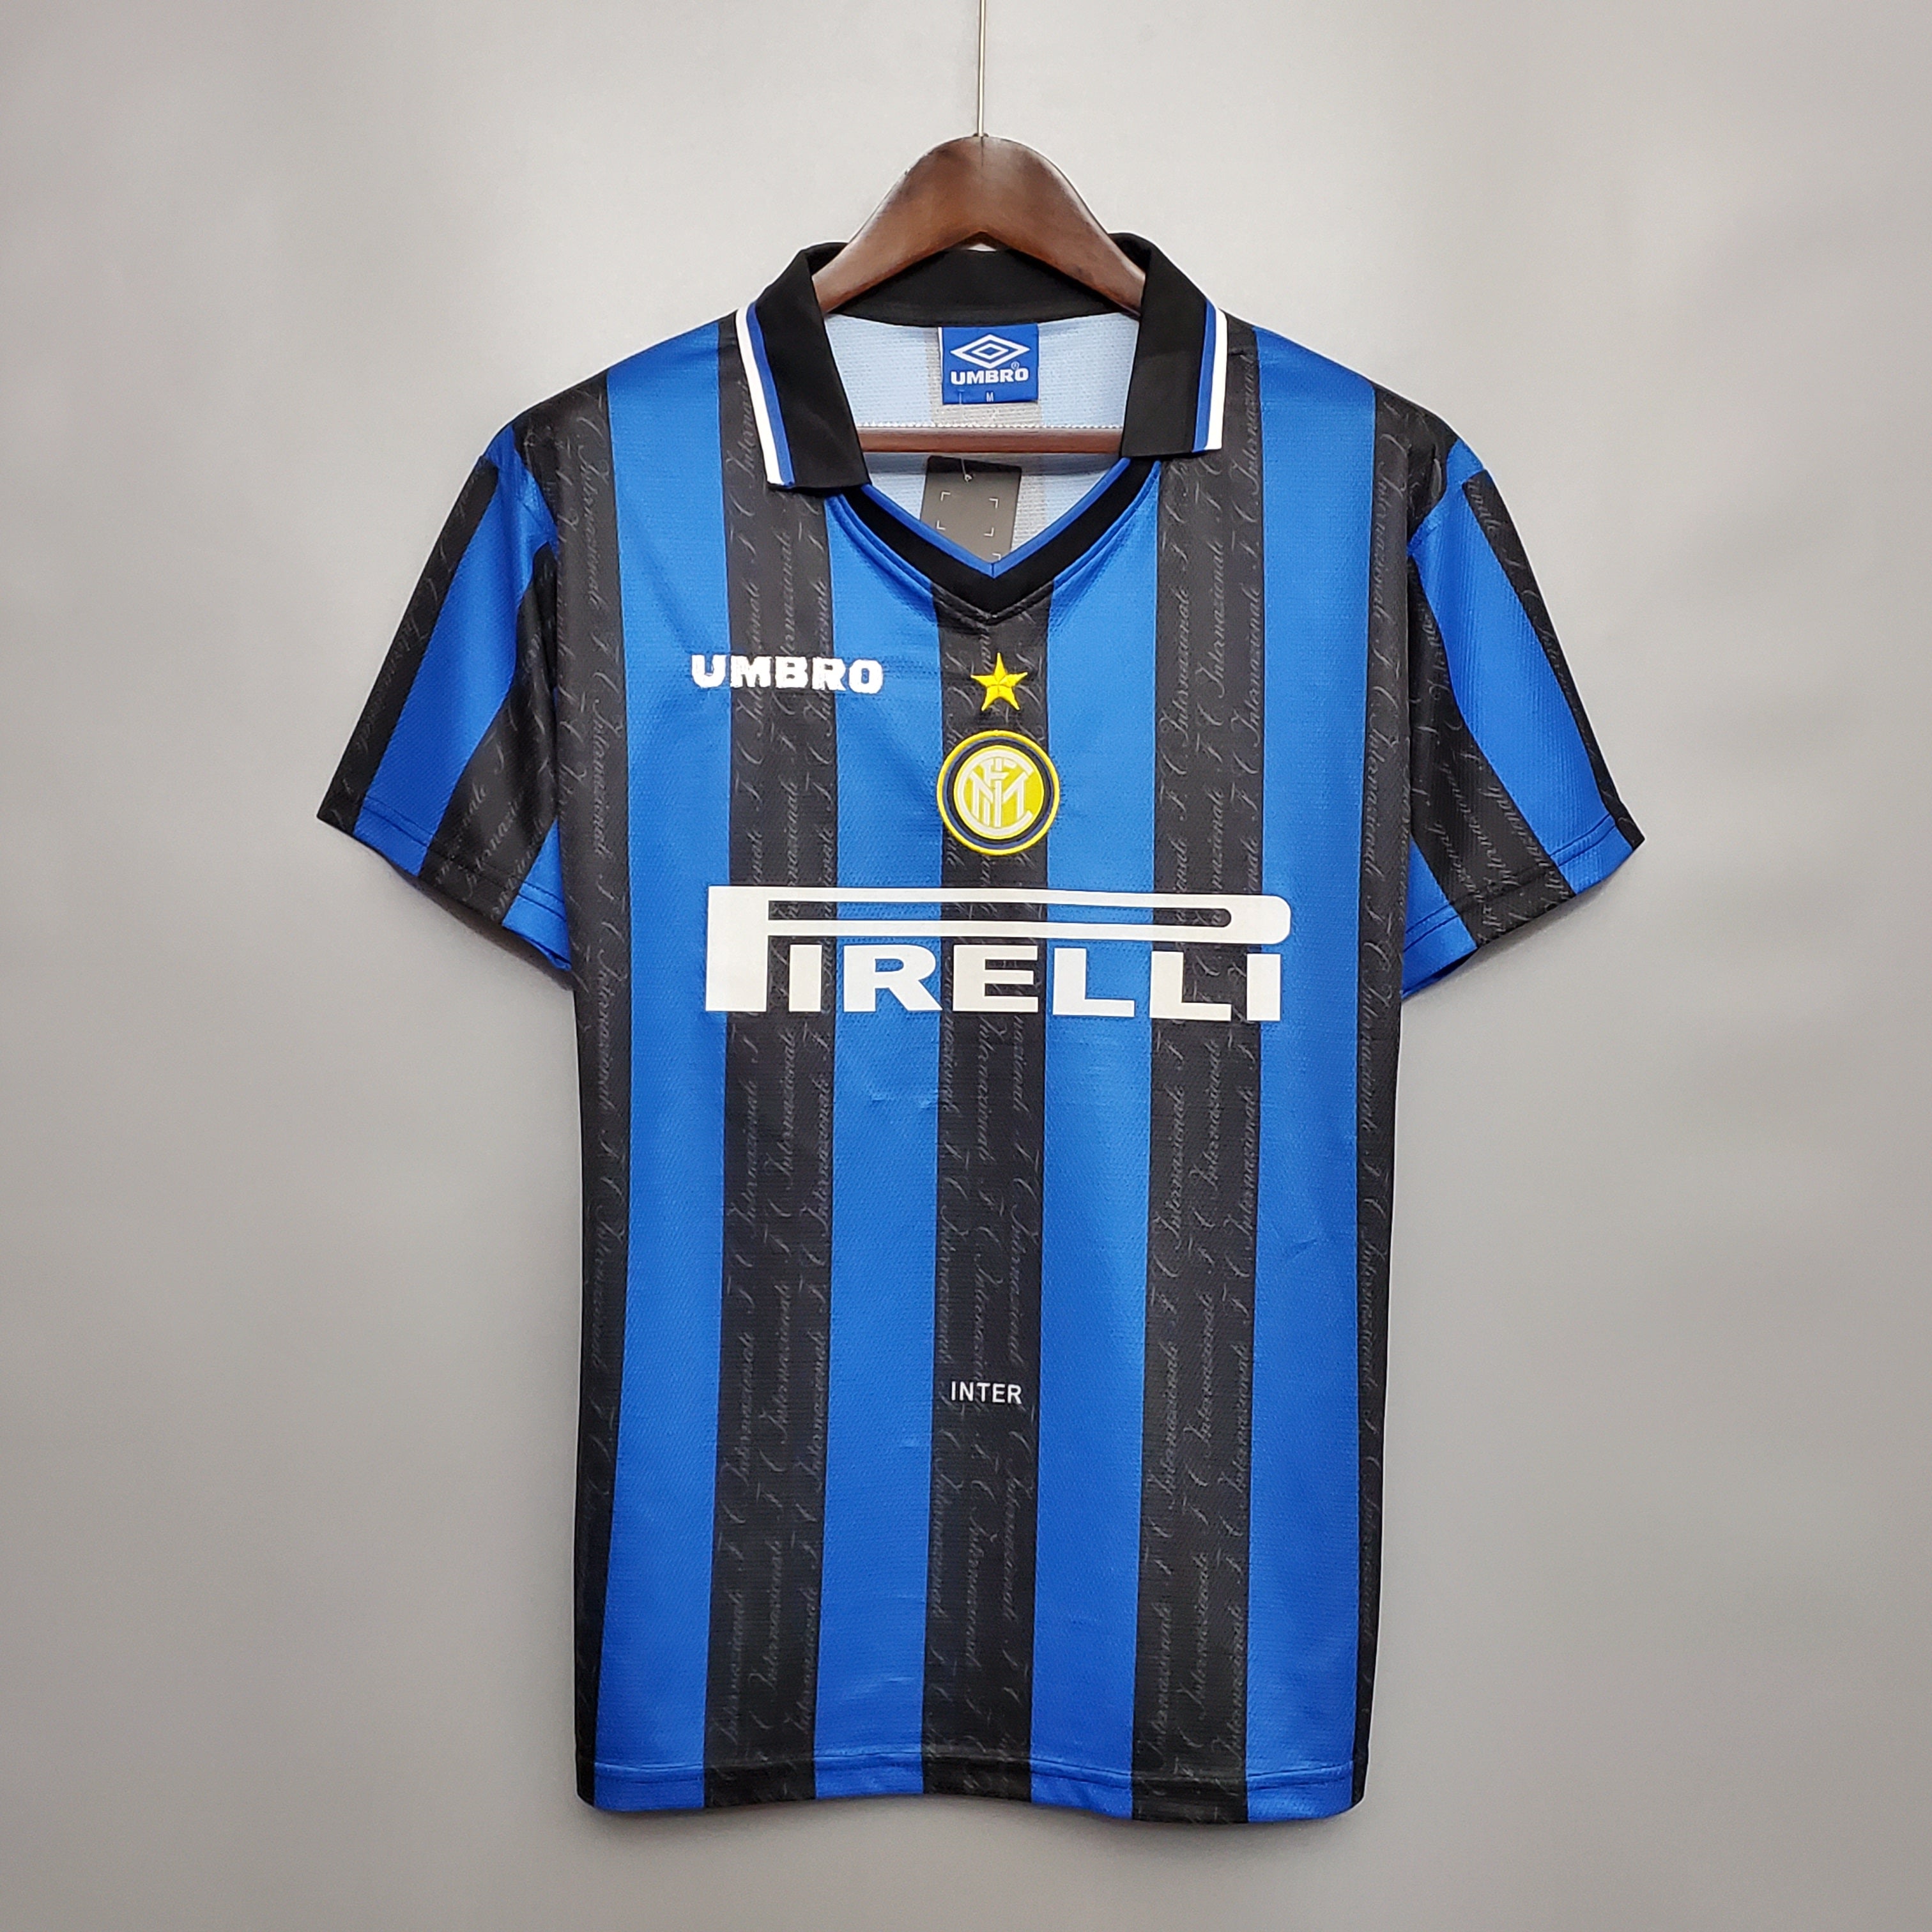 Inter Milan 1997-98 Home Jersey